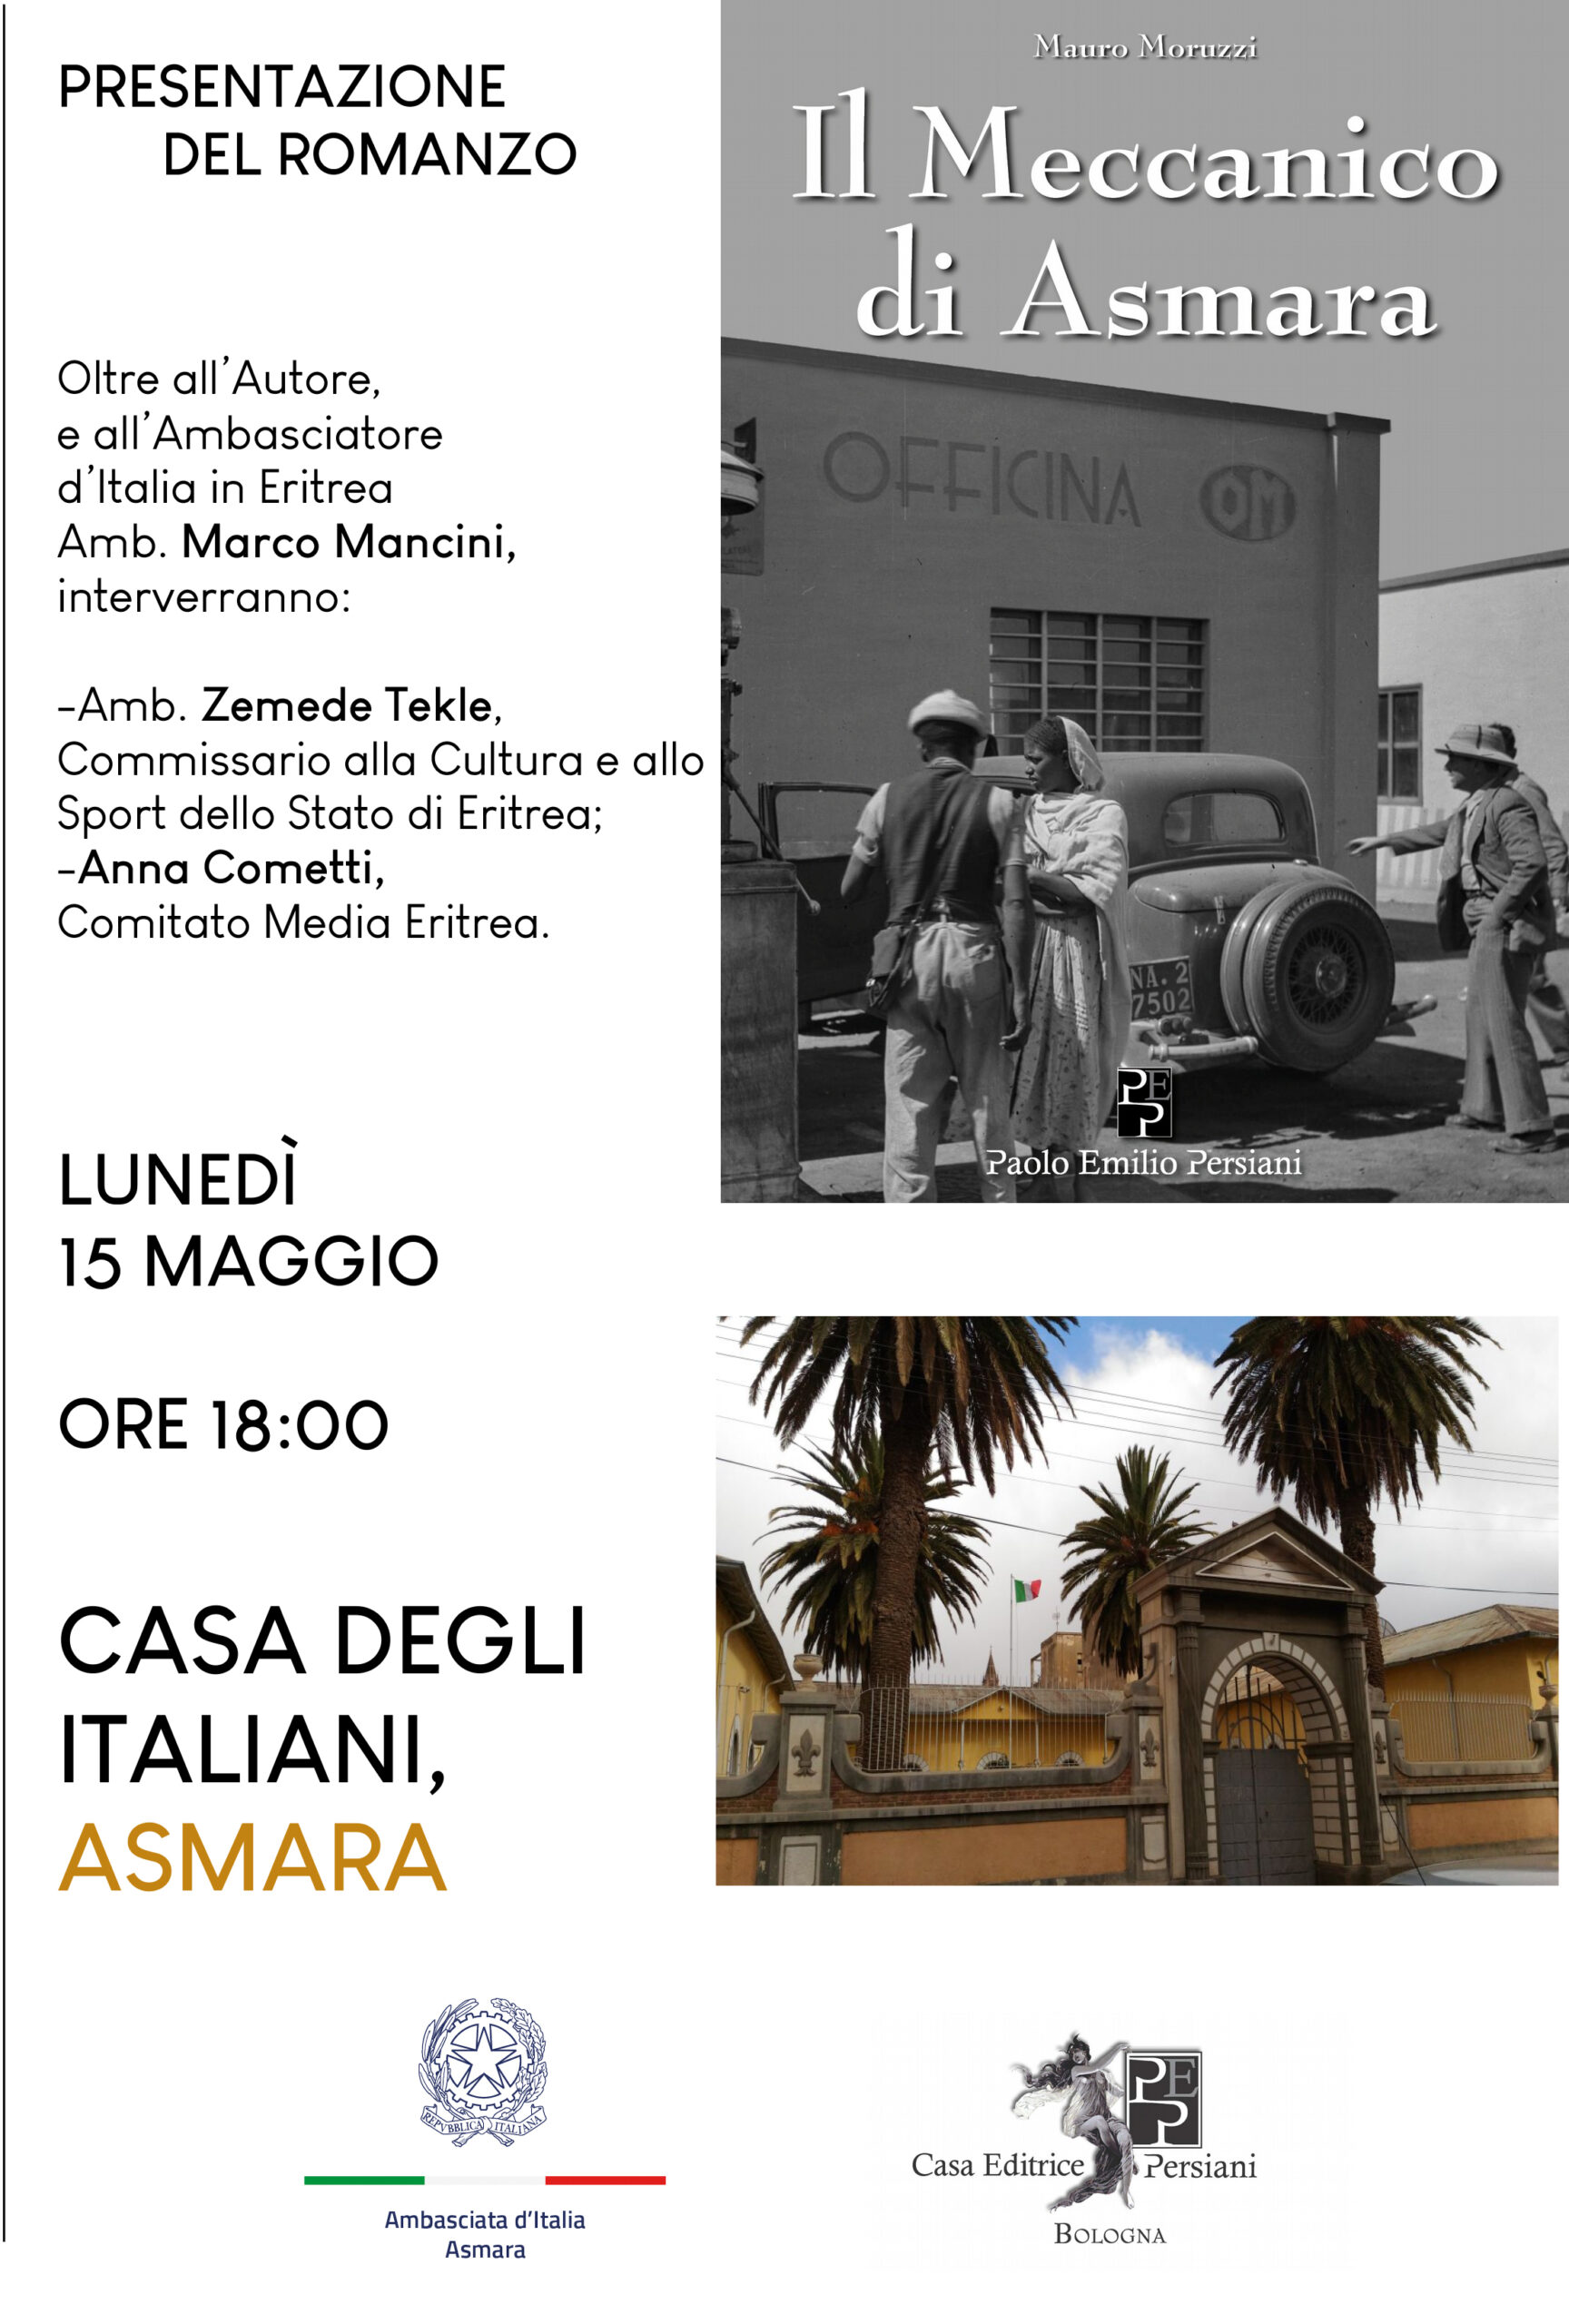 Alla Casa degli Italiani di Asmara la presentazione de "Il Meccanico di Asmara"